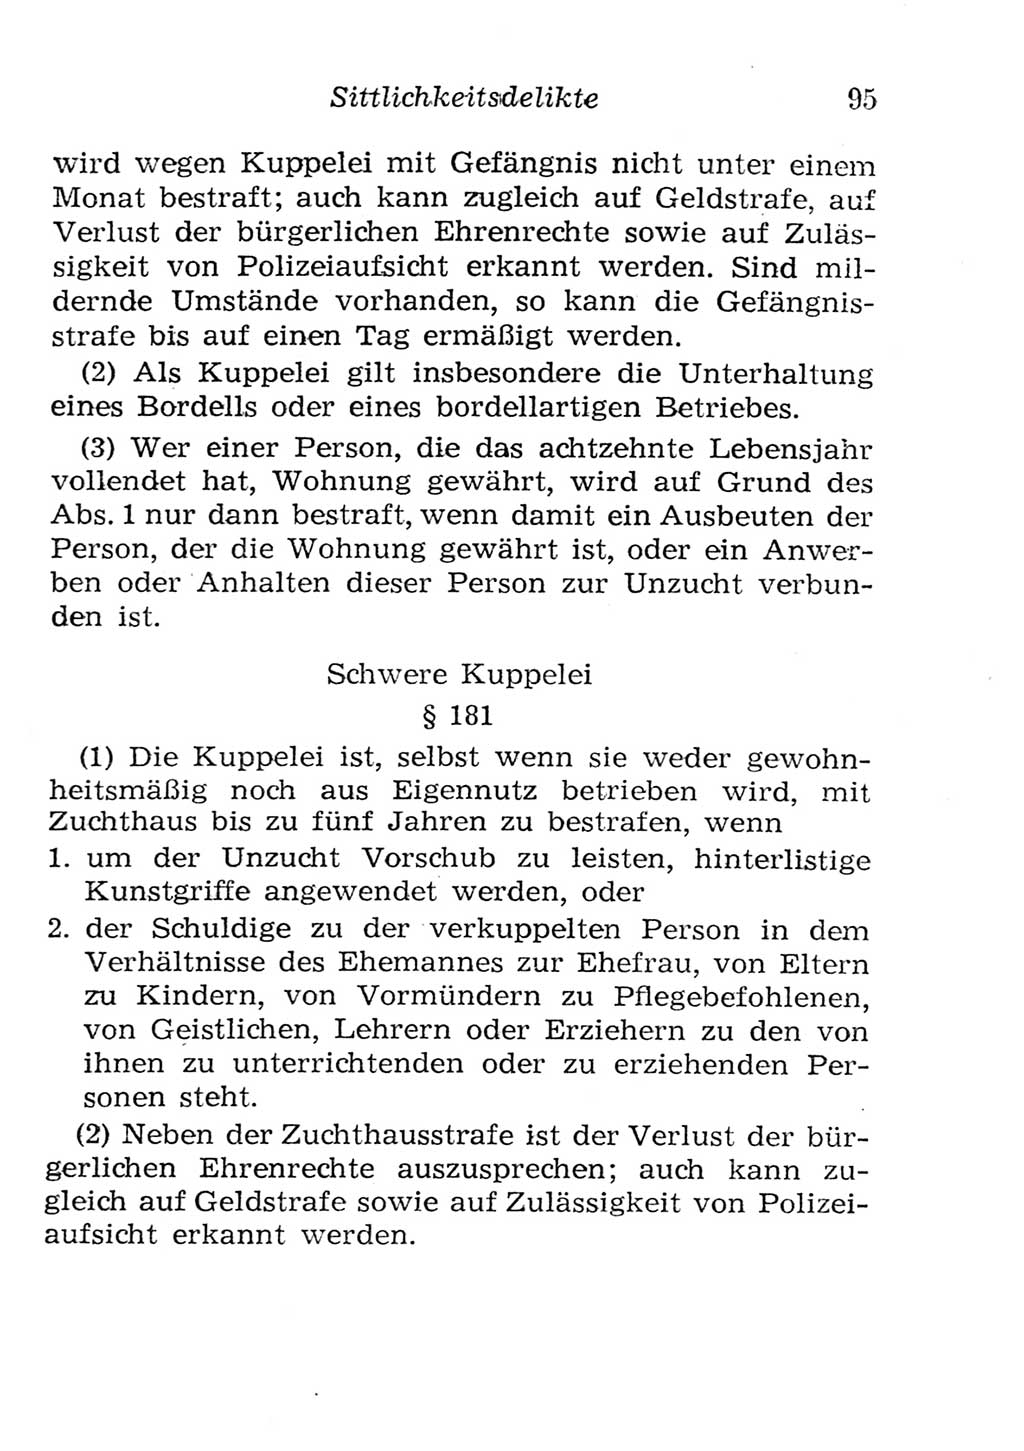 Strafgesetzbuch (StGB) und andere Strafgesetze [Deutsche Demokratische Republik (DDR)] 1957, Seite 95 (StGB Strafges. DDR 1957, S. 95)